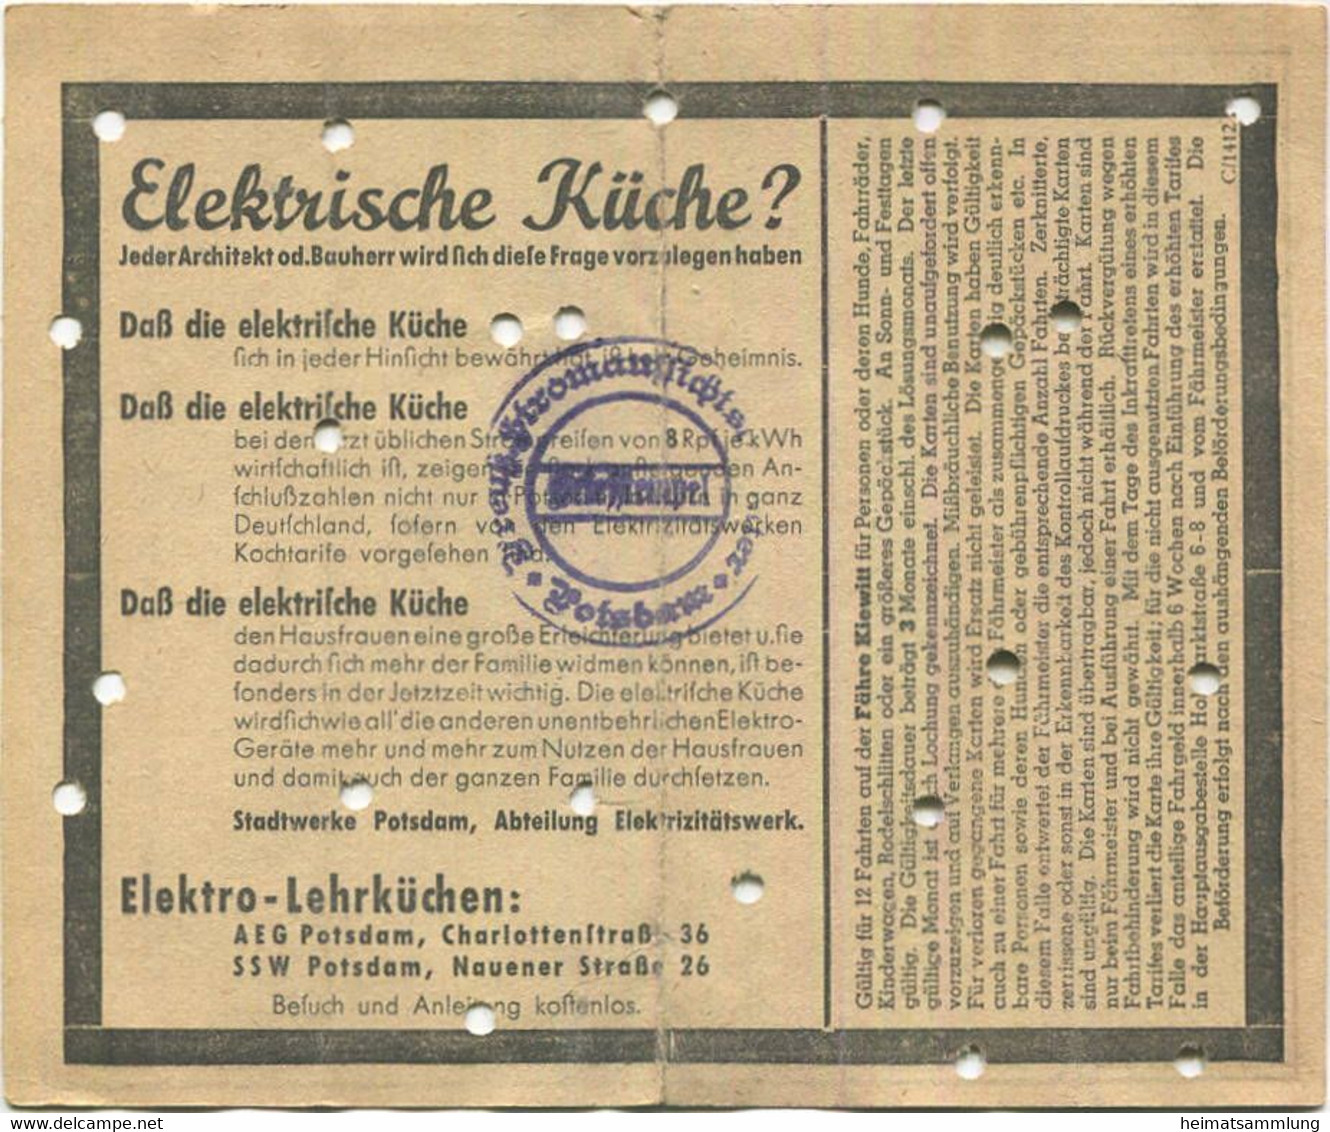 Deutschland - Stadtwerke Potsdam Abt. Verkehrsbetriebe -  Zwölferkarte Für Fähre Kiewitt - Preis 0.80 RM - Fahrkarte - Europa